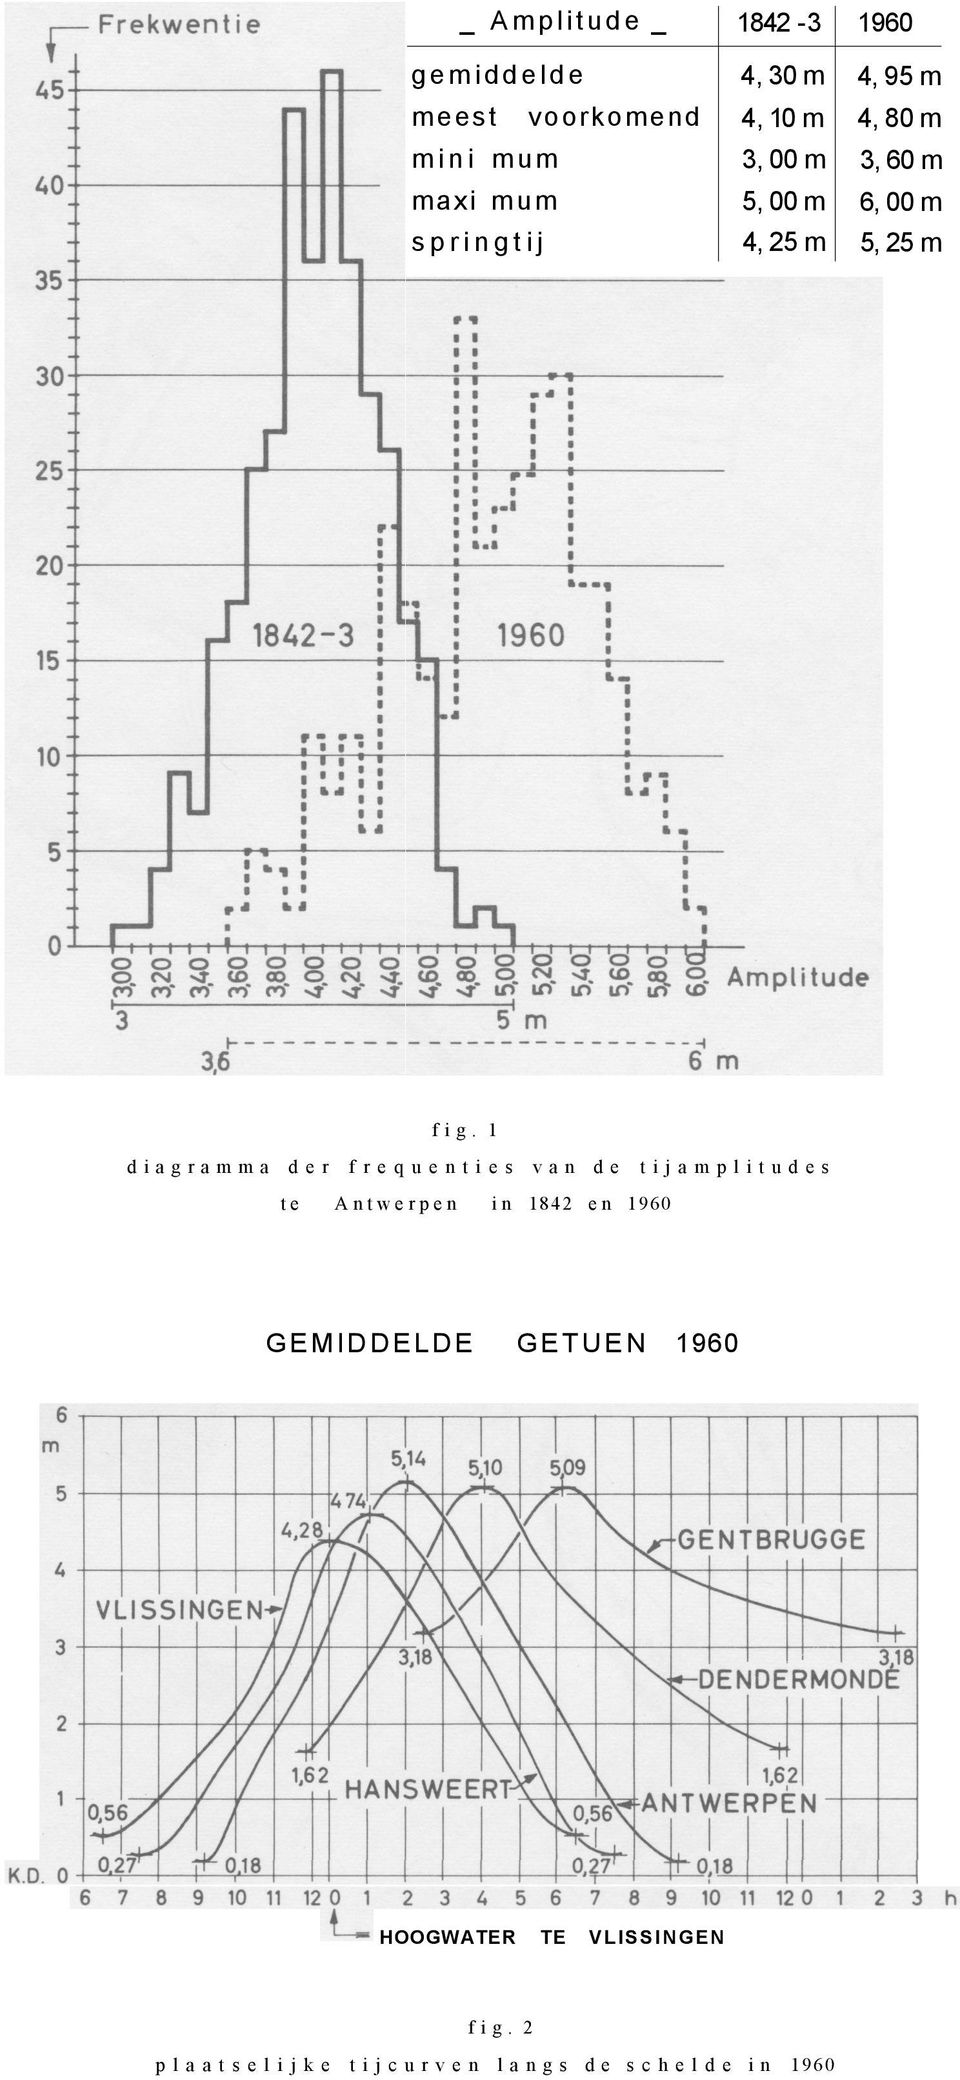 1 diagramma der frequenties van de tijamplitudes te Antwerpen in 1842 en 1960